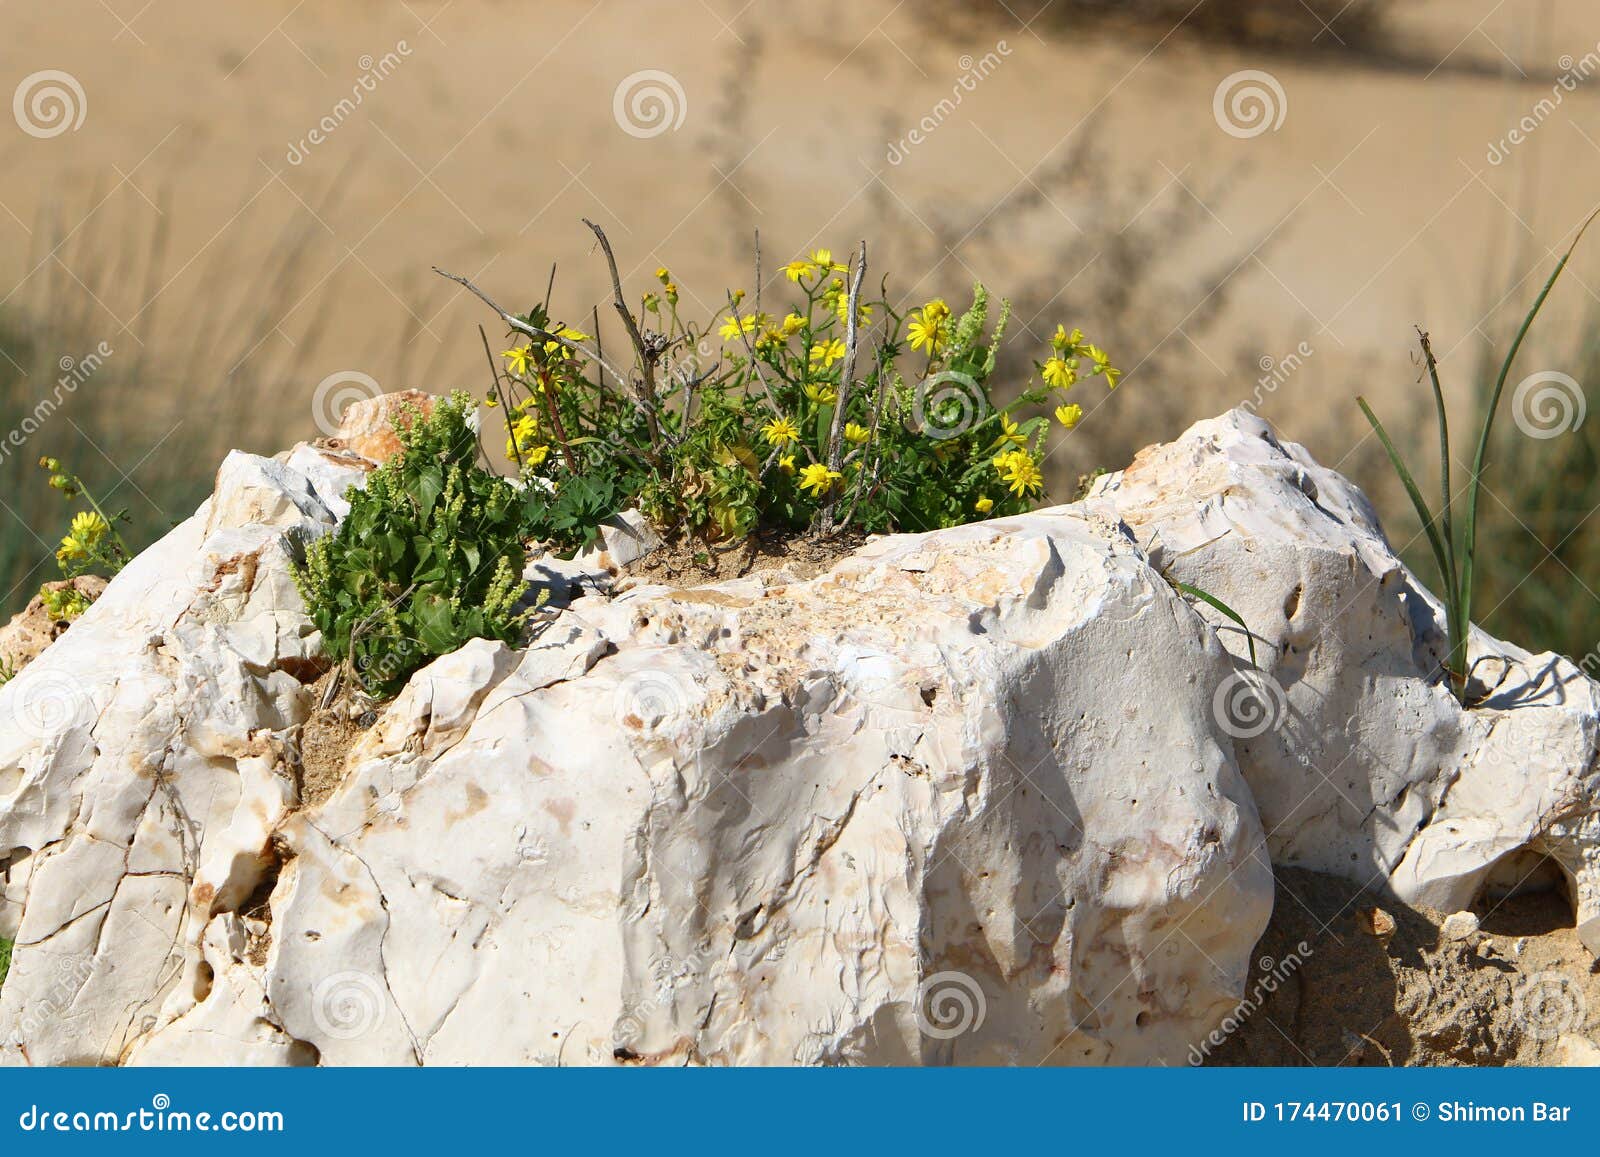 Plantas Verdes Y Flores Crecieron Sobre Piedras Y Rocas Imagen de archivo -  Imagen de piedras, plantas: 174470061